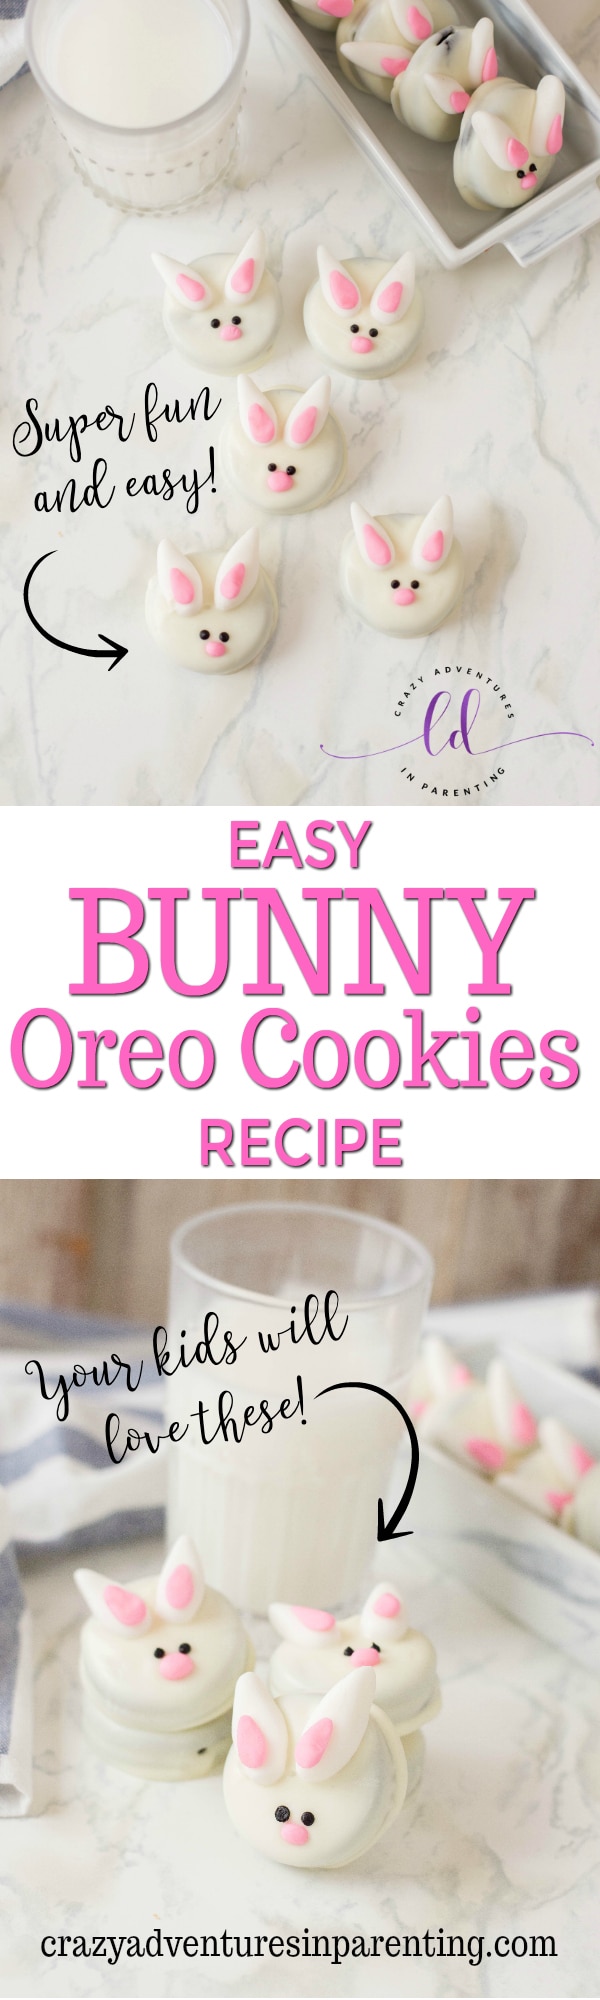 Easy Bunny Oreo Cookies Recipe